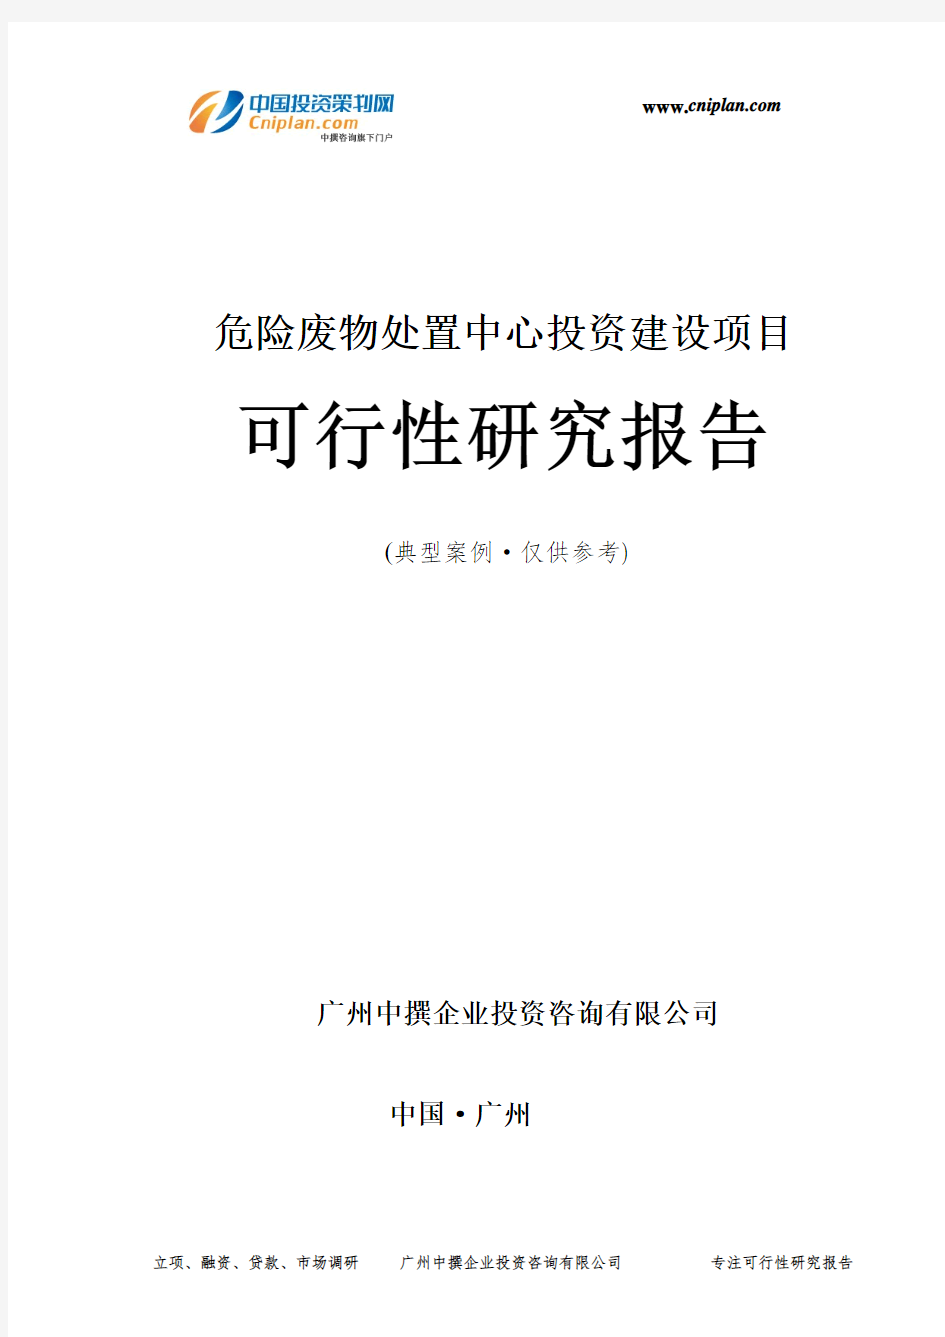 危险废物处置中心投资建设项目可行性研究报告-广州中撰咨询